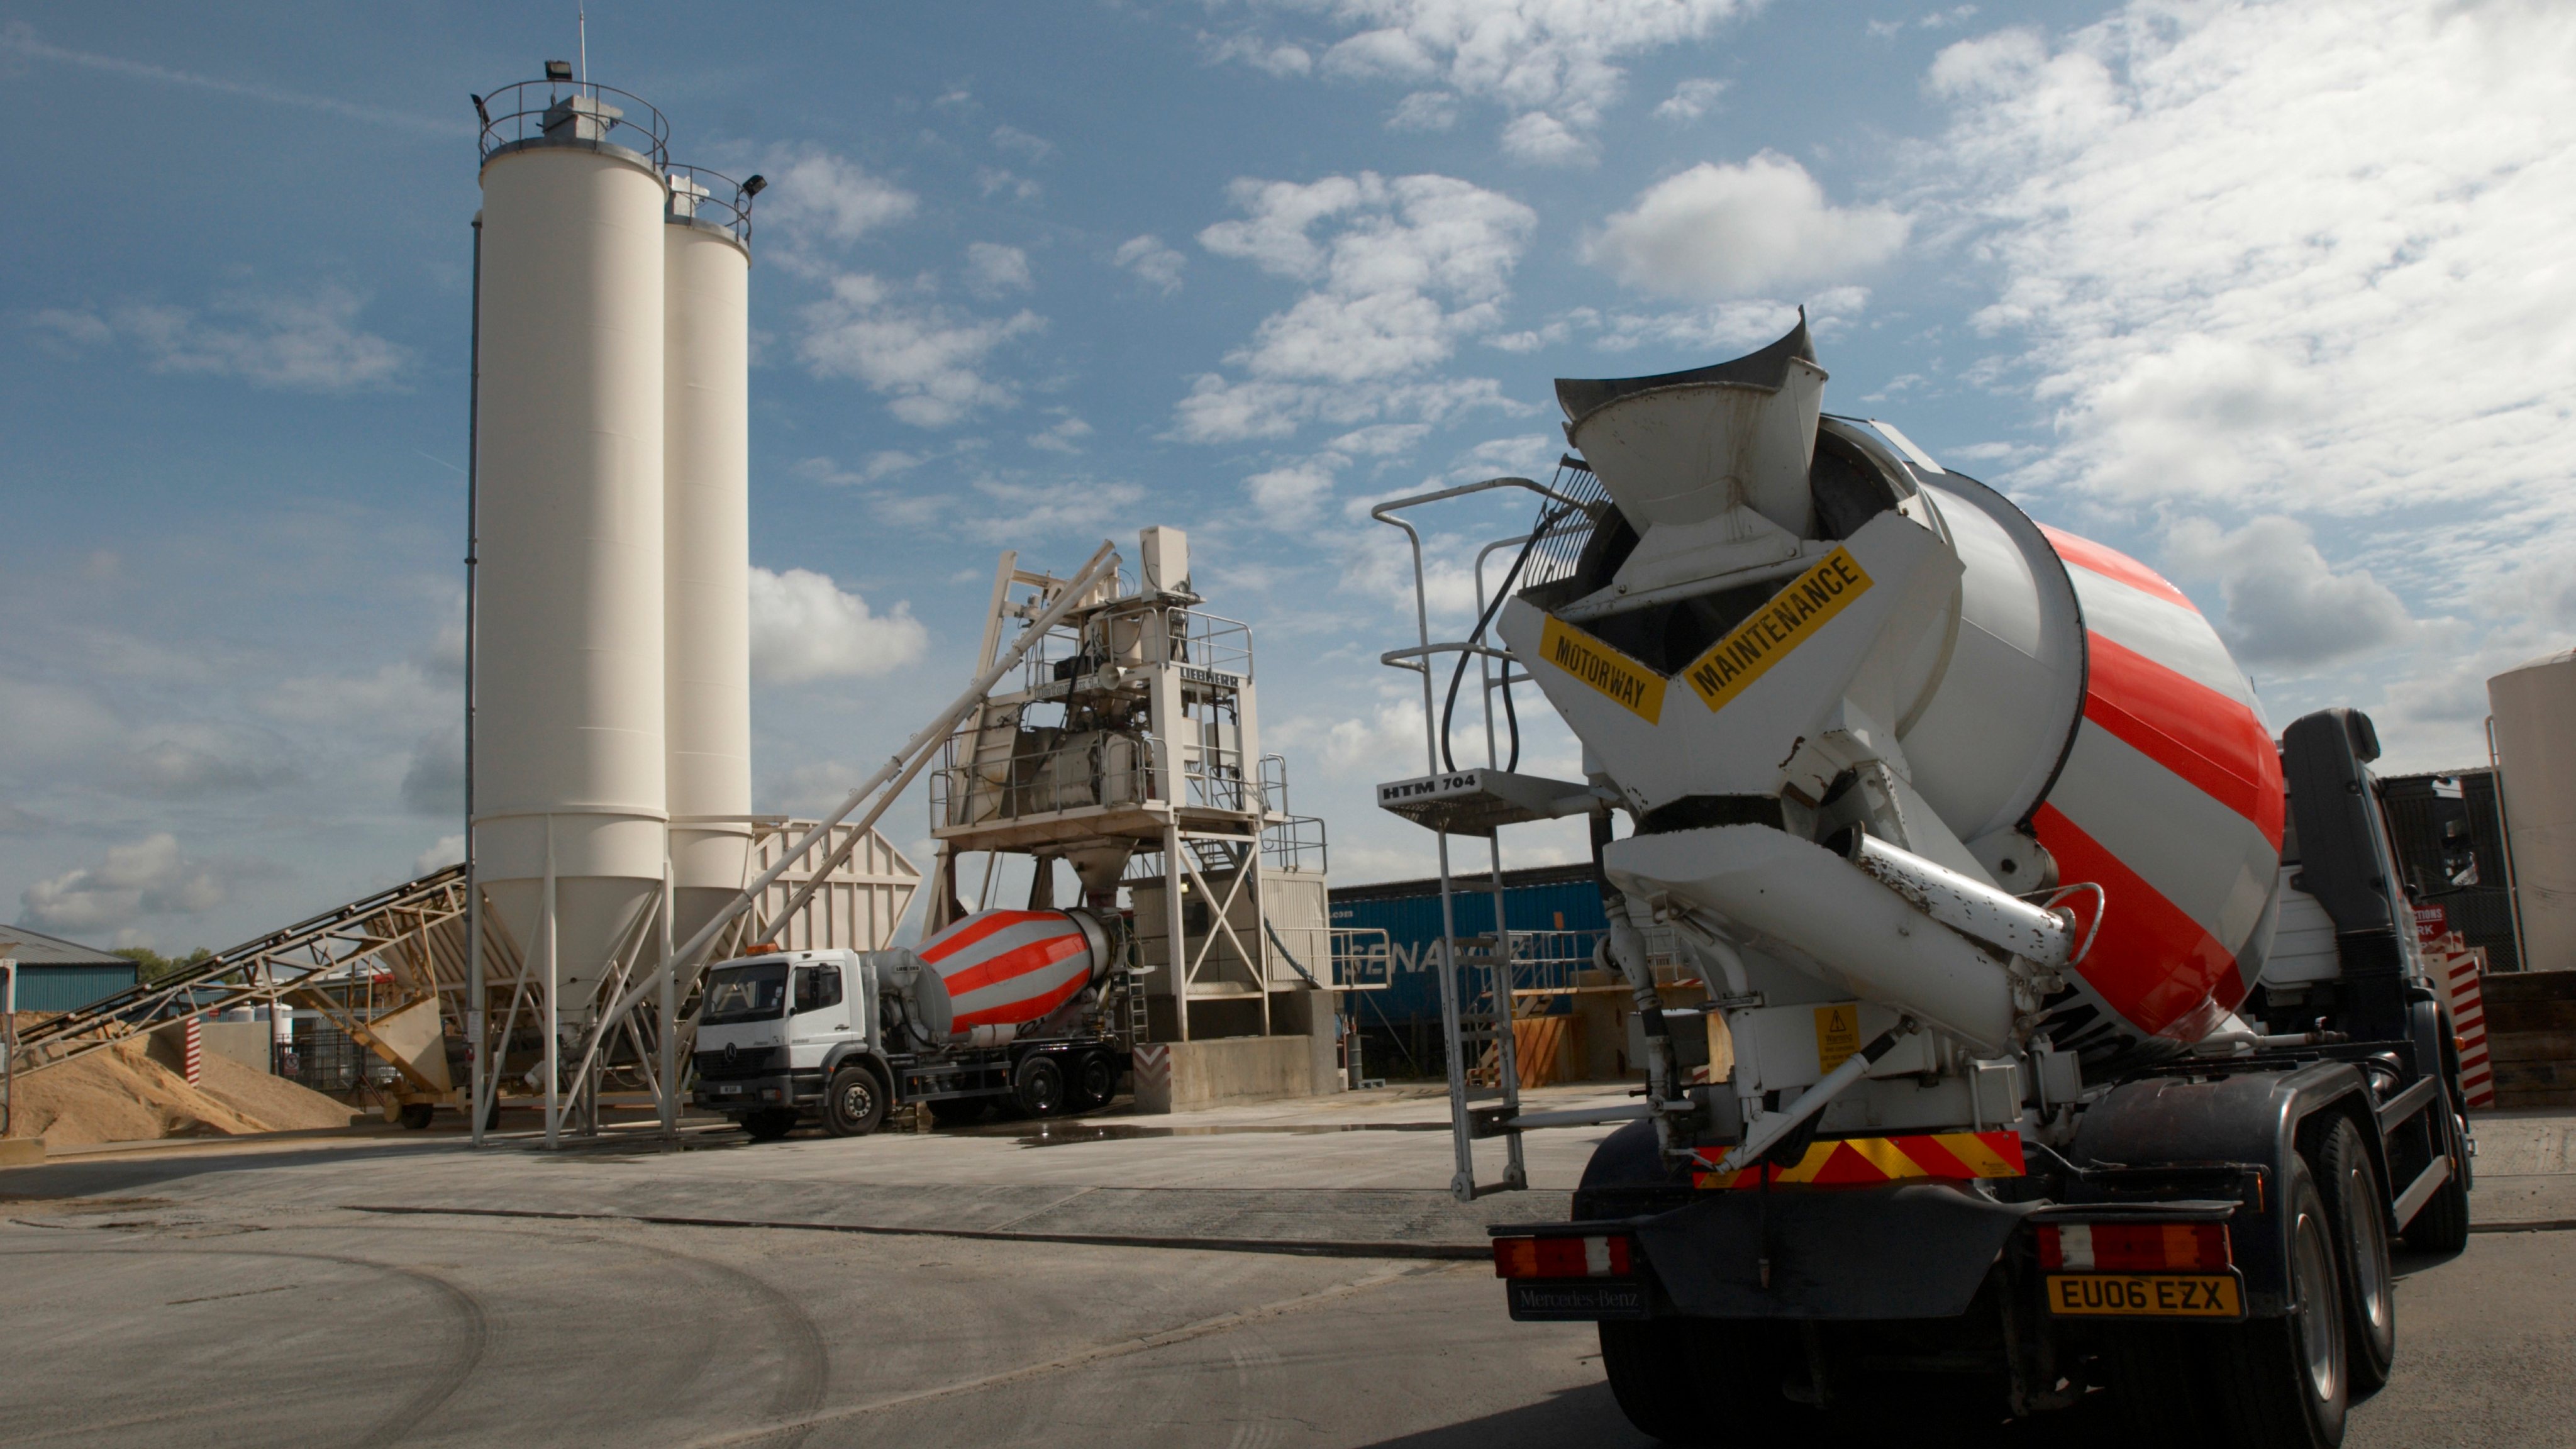 Cement mixer at cement works, Ipswich, Suffolk, UK